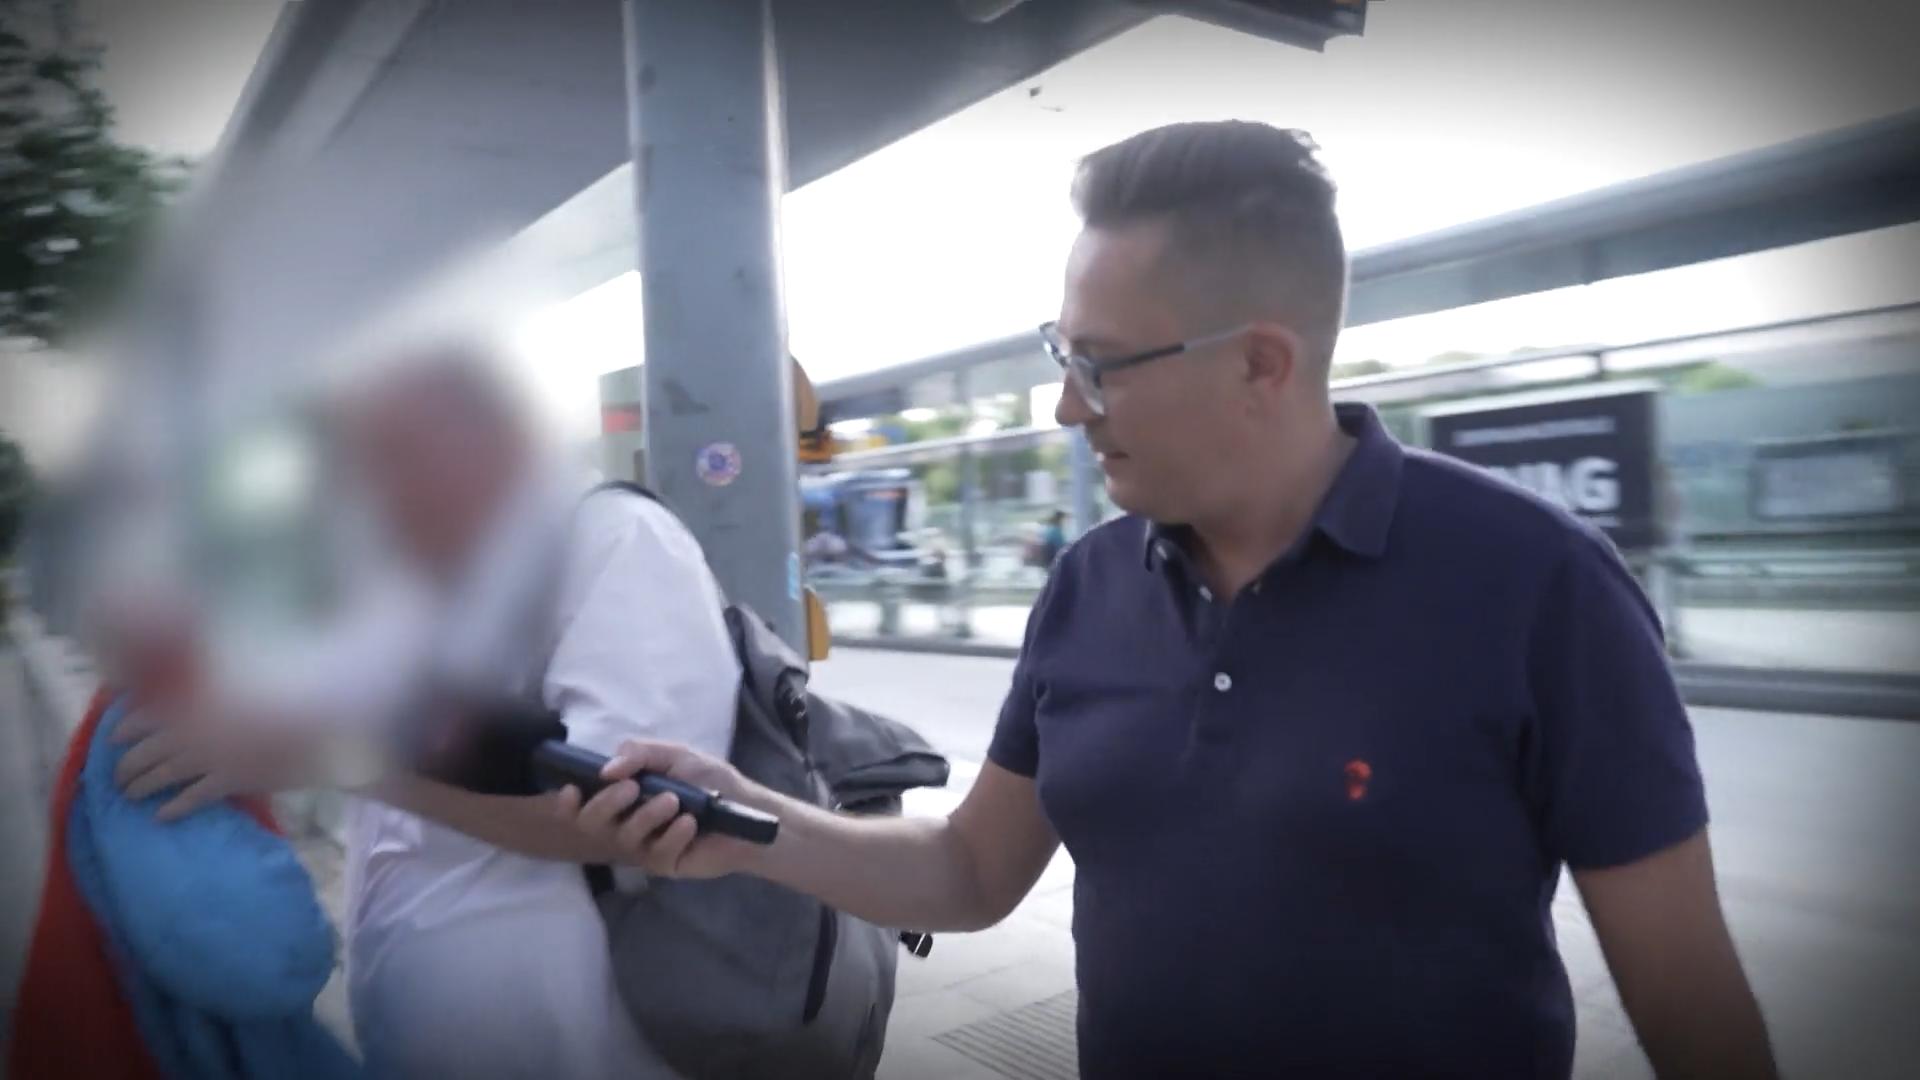 RTL-Reporter ertappt Stalker auf frischer Tat Er lässt sein Opfer nicht in Ruhe